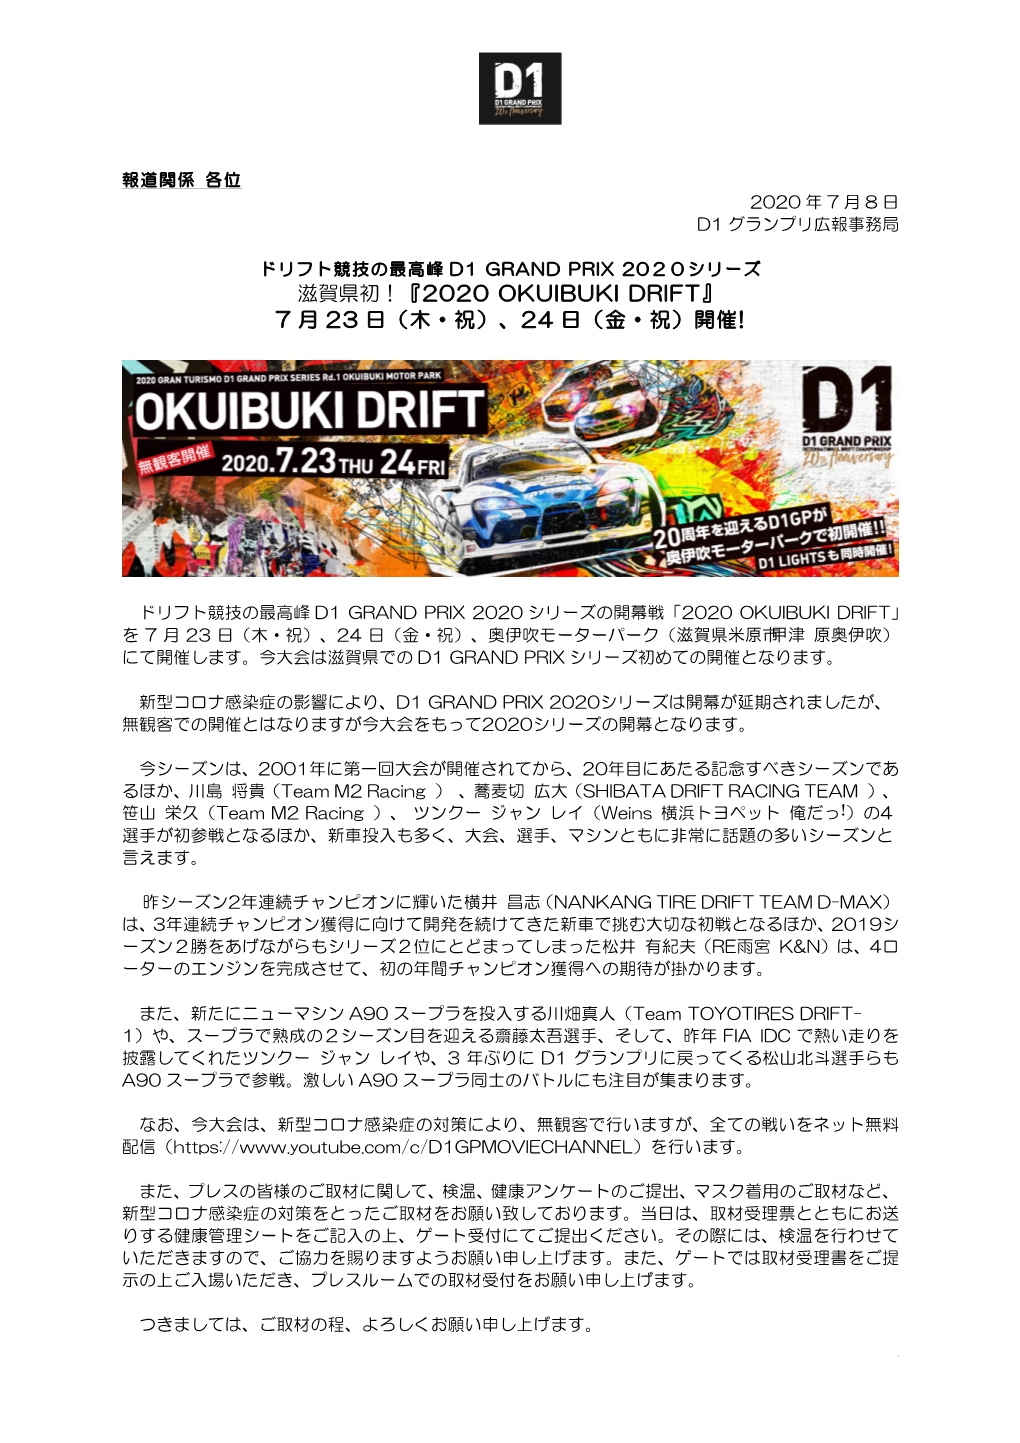 『2020 Okuibuki Drift』 7 月 23 日（木・祝）、24 日（金・祝）開催!